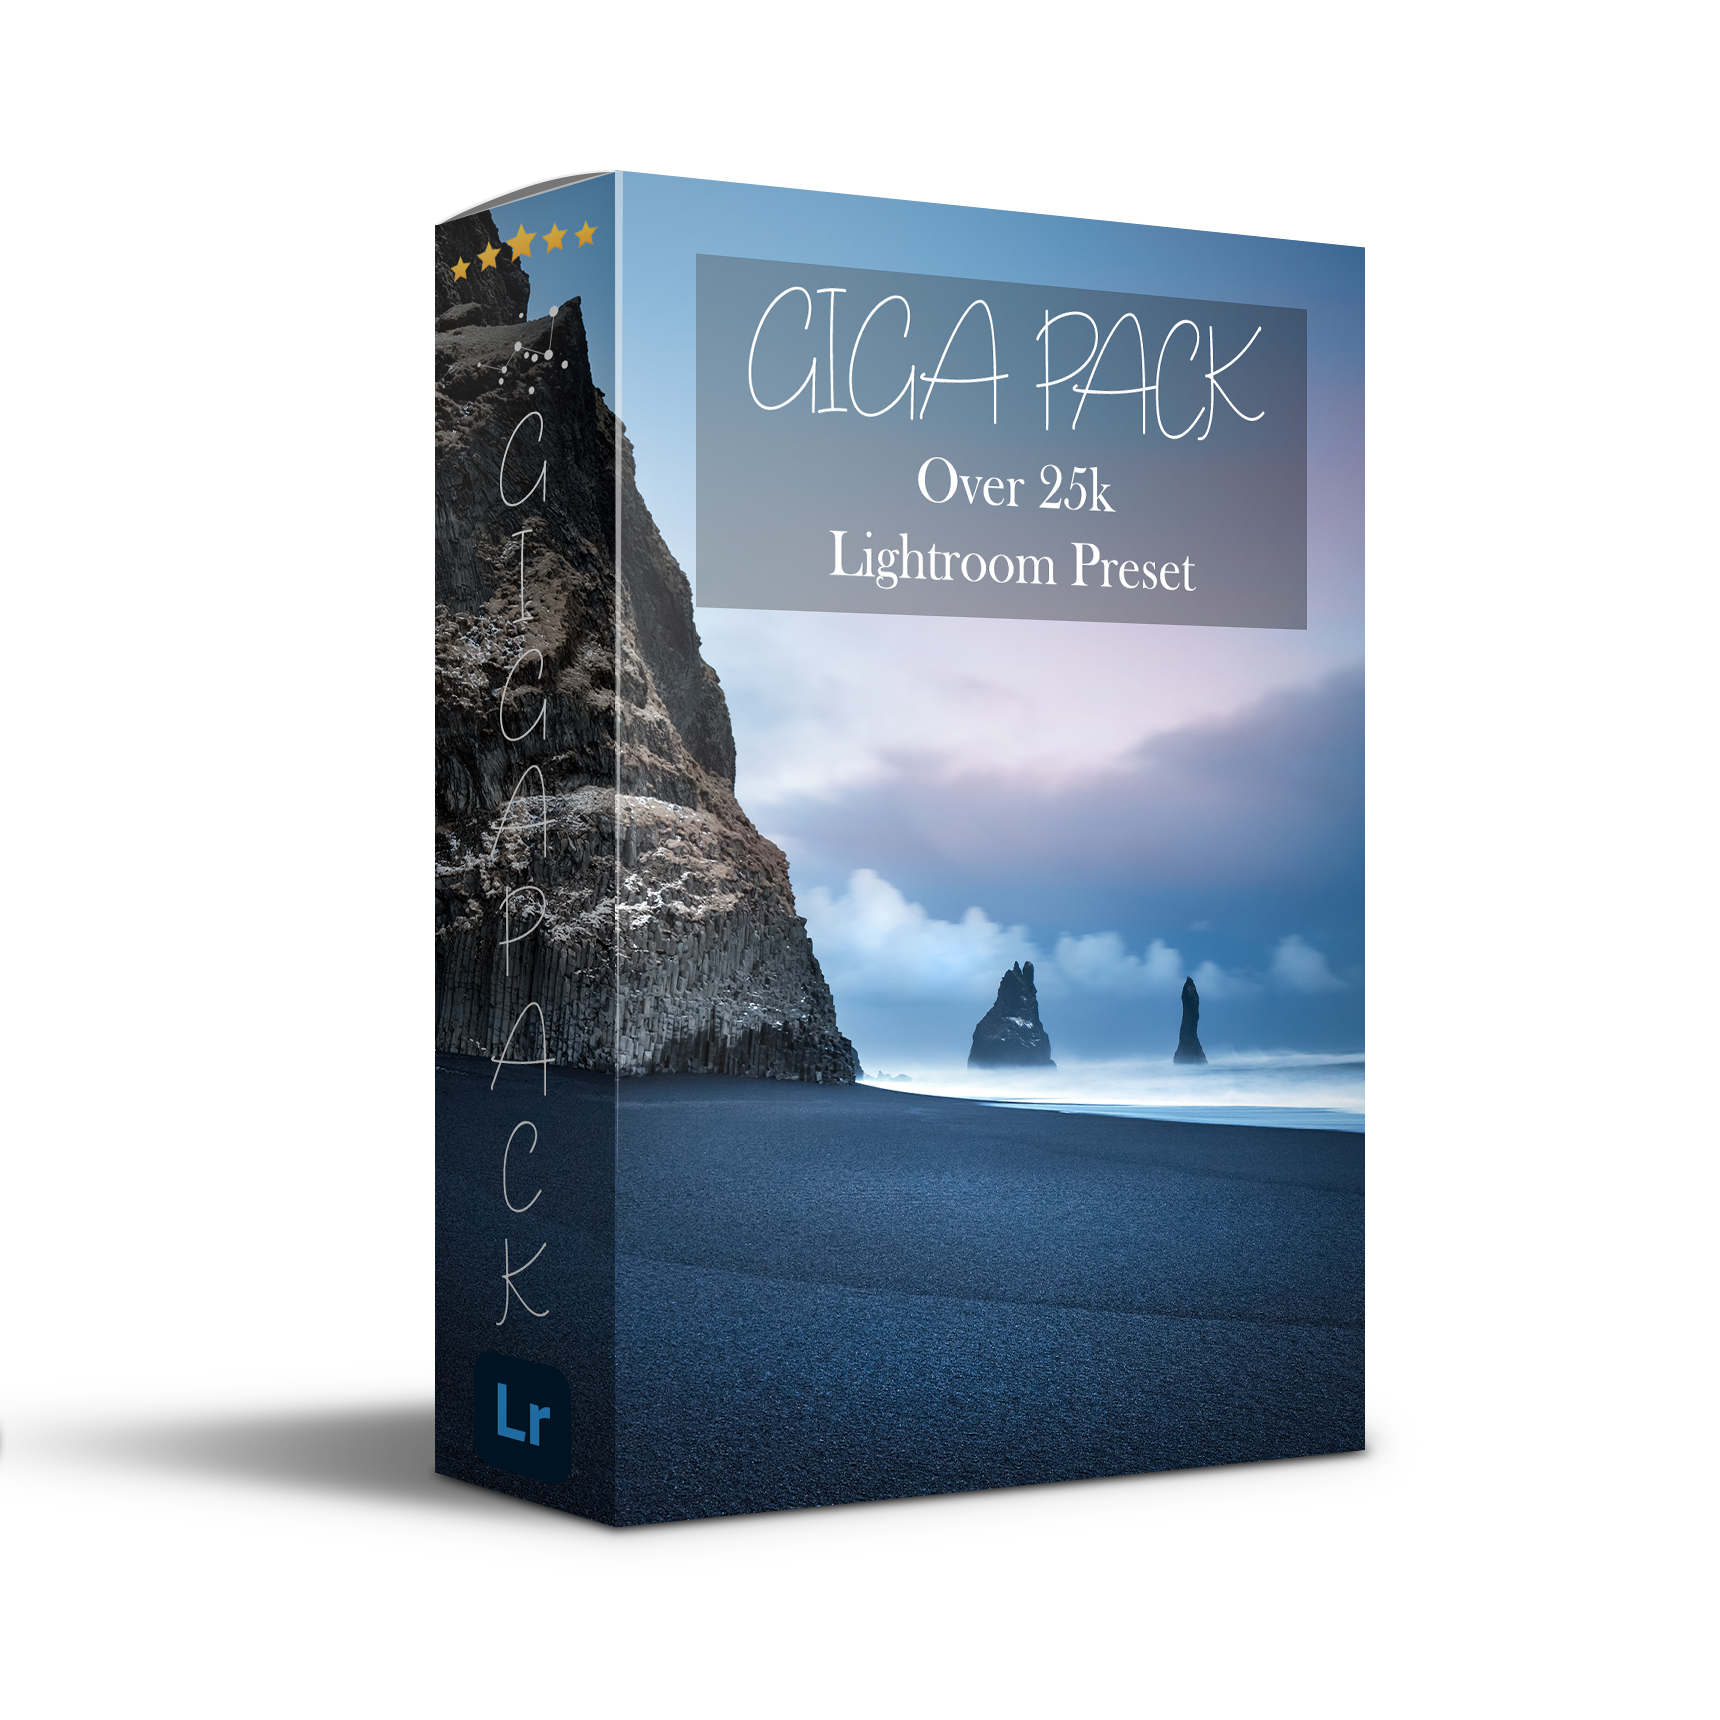 GigaPack - Over 25.000 Lightroom Preset - Digital Imaging Solutions S.r.l.